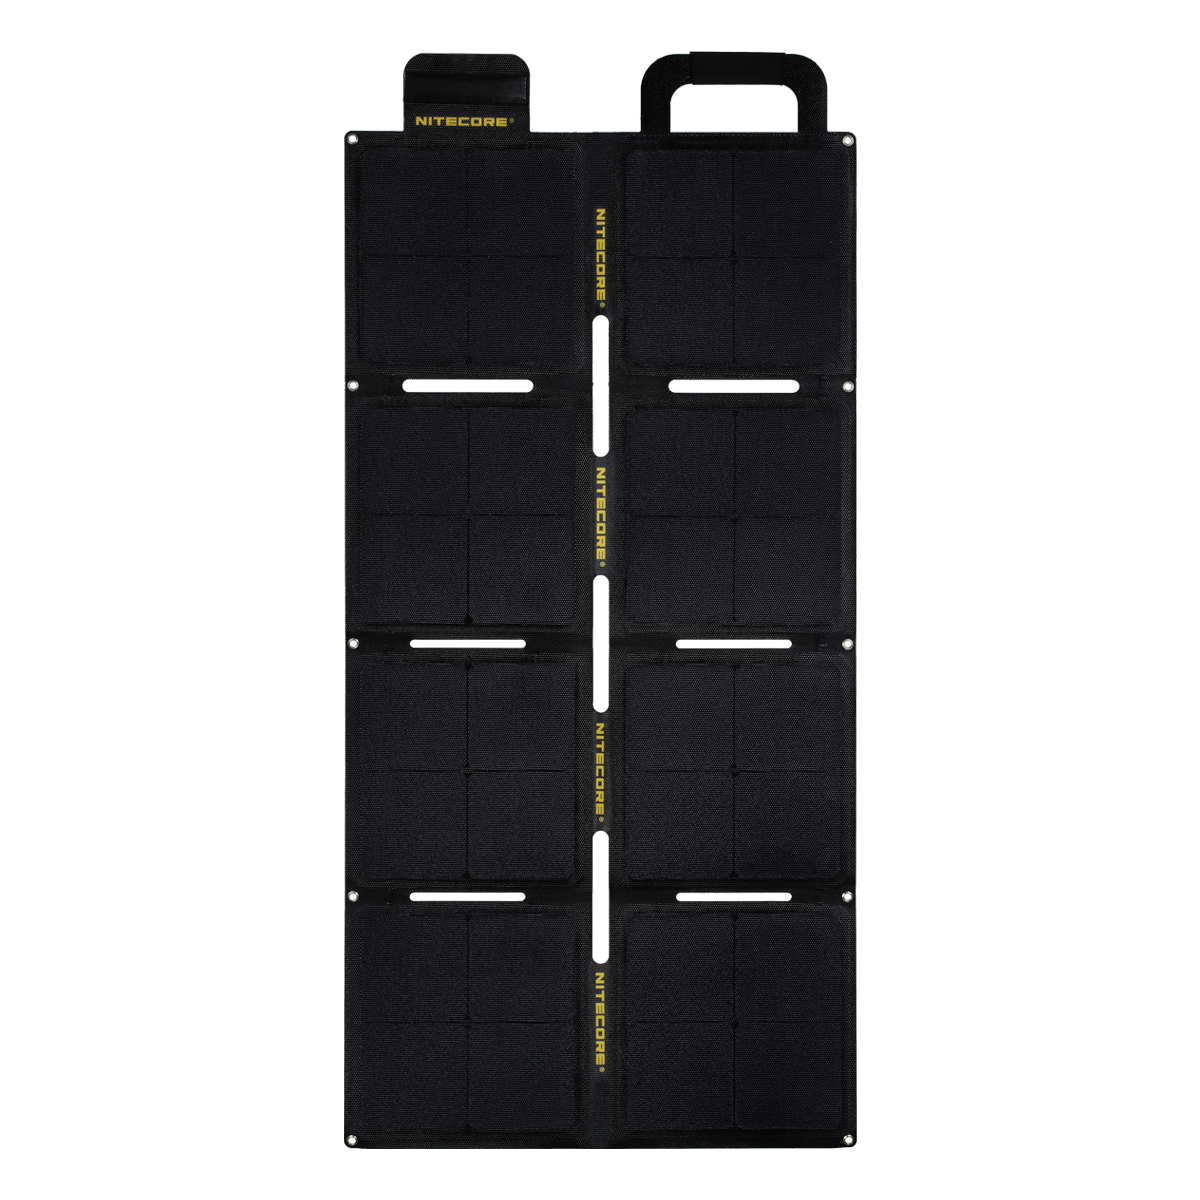 Pannello solare pieghevole NITECORE FSP100W ETFE da 100 W con impermeabilità IPX5, uscita di 5,6 A e 18 V per dispositivi a celle solari di energia solare in campeggio e viaggio.